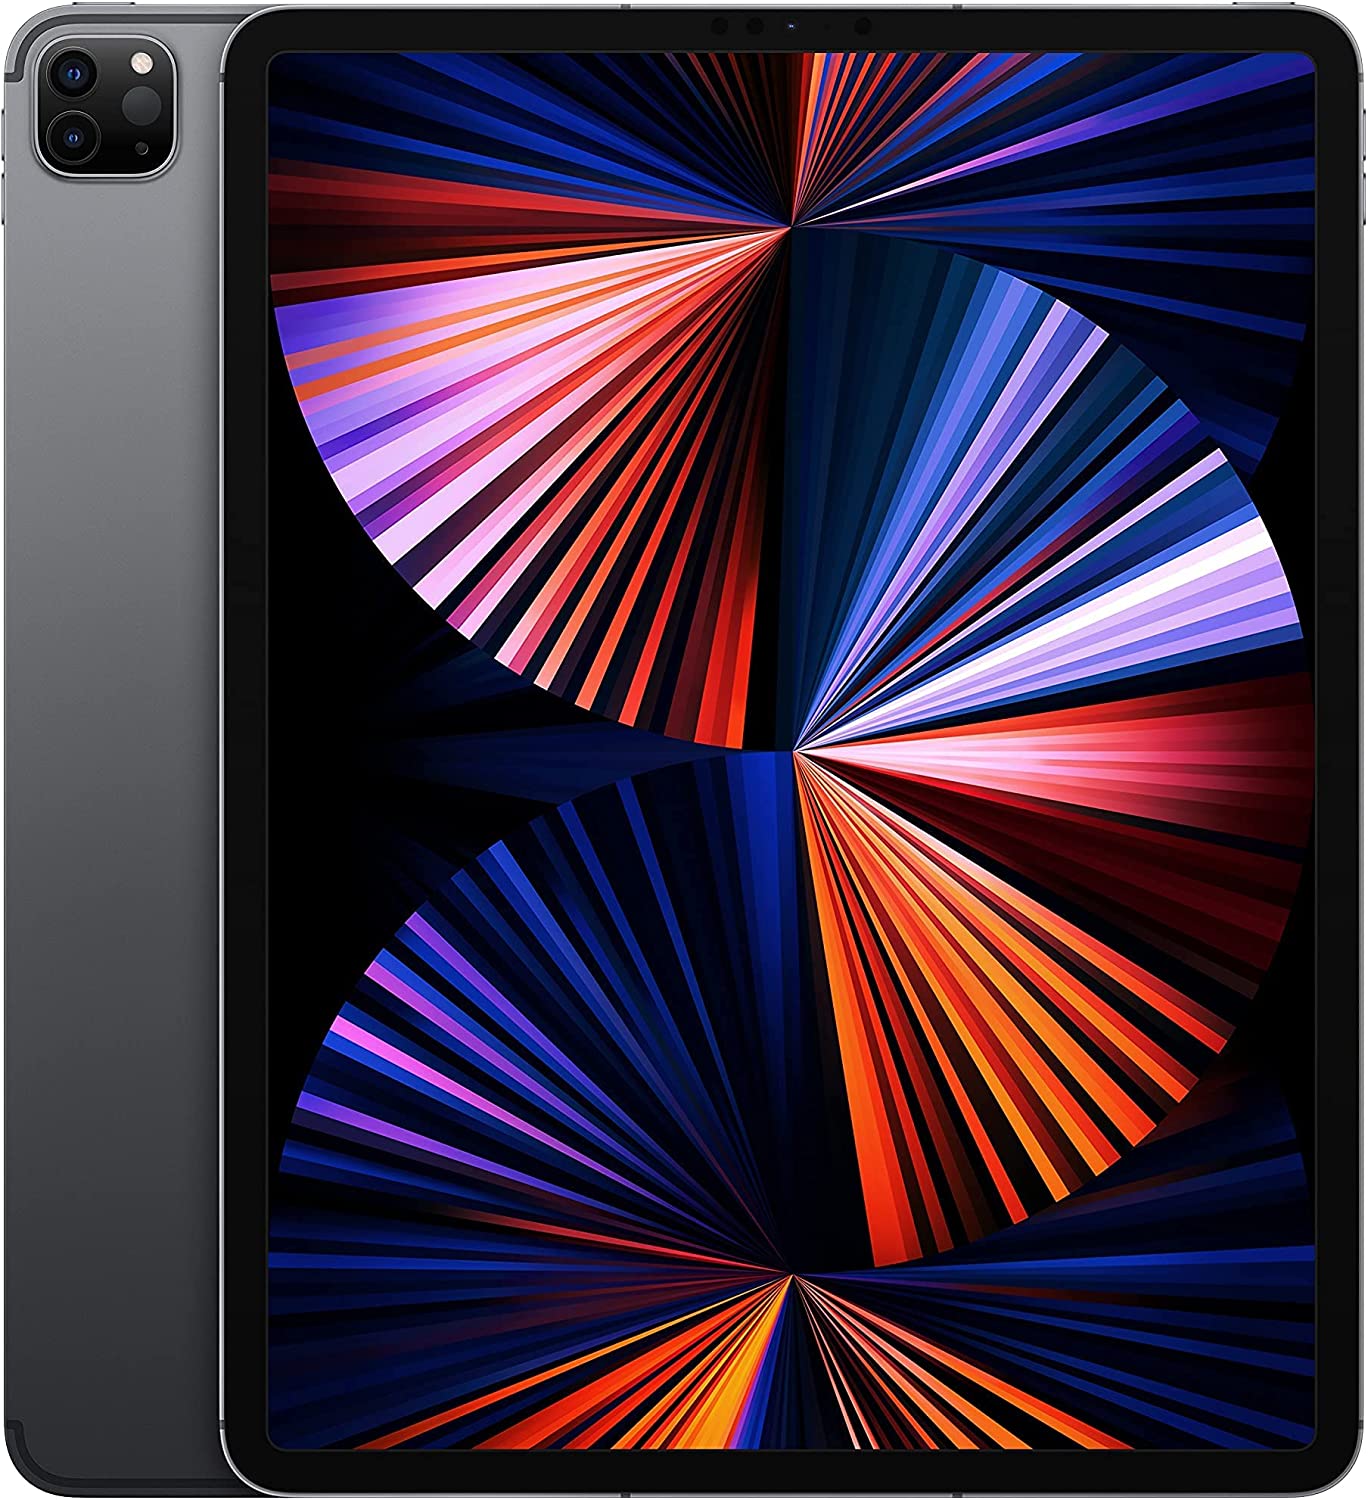 Apple iPad Pro 5th Gen 2021, 12.9-inch, 512GB, WIFI + 4G Unlocked - Space Gray (Pre-Owned)